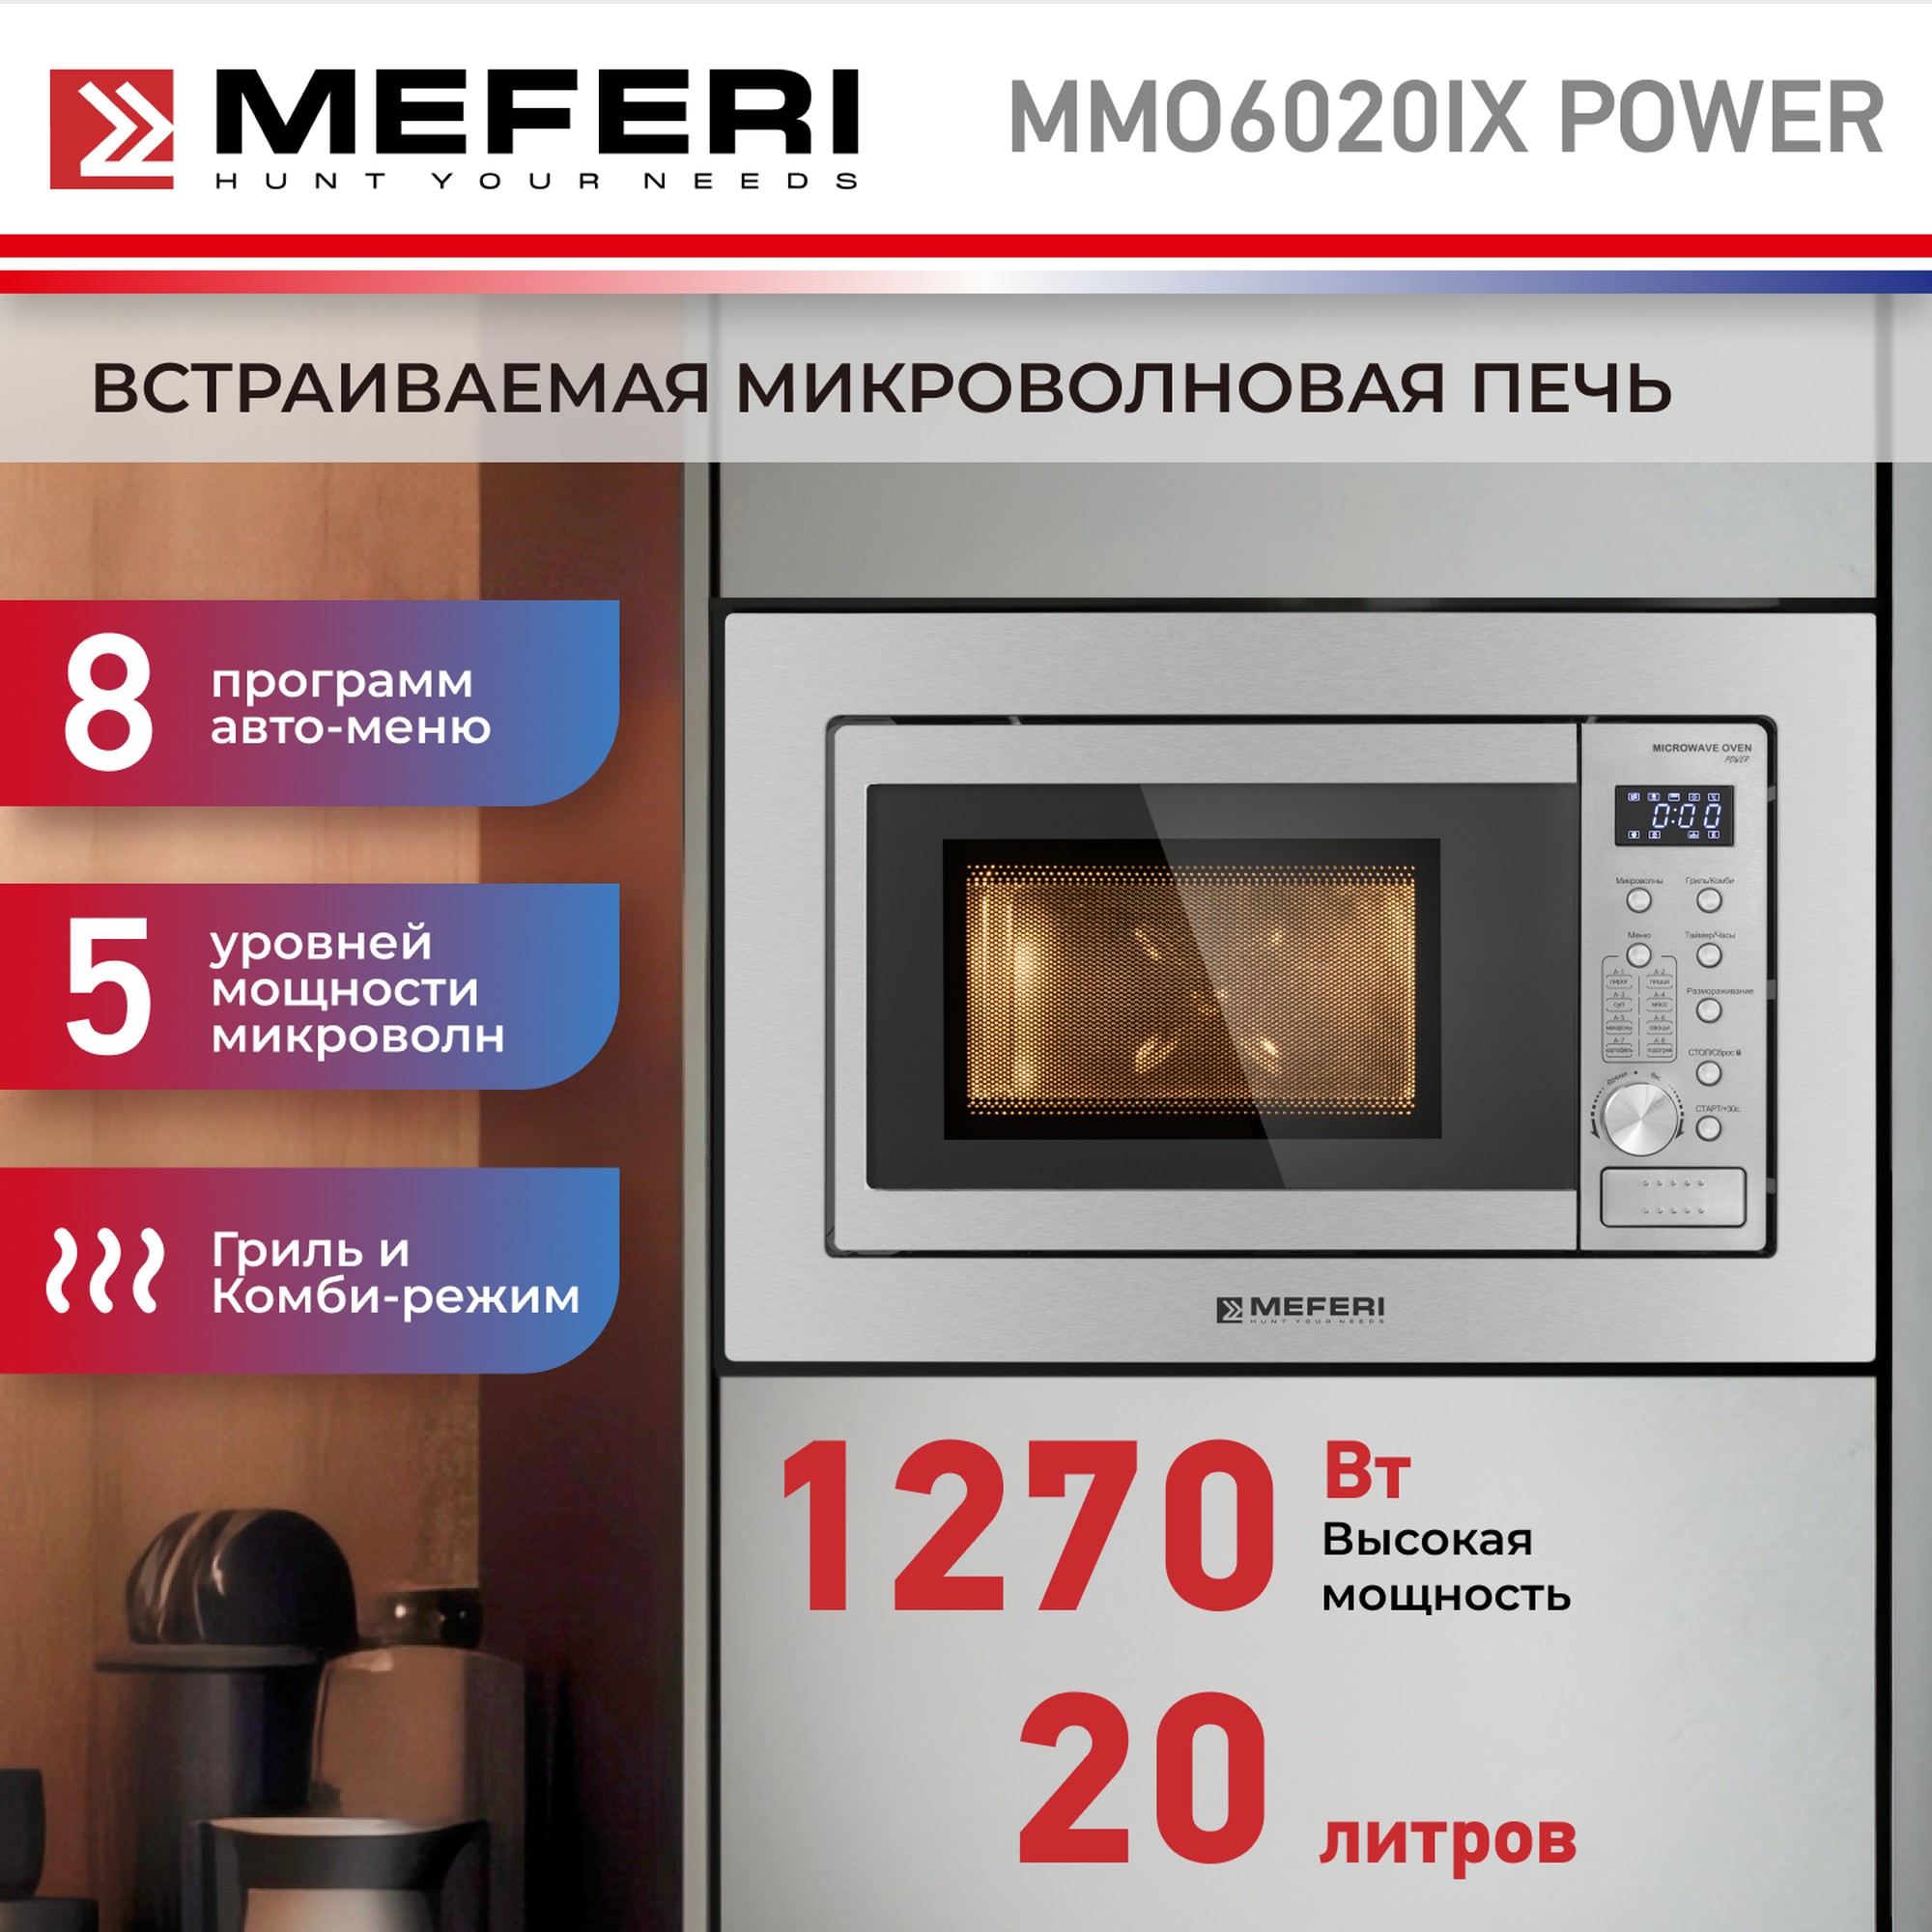 Встраиваемая микроволновая печь MEFERI MMO6020IX POWER встраиваемая варочная панель индукционная meferi mih302wh power белый